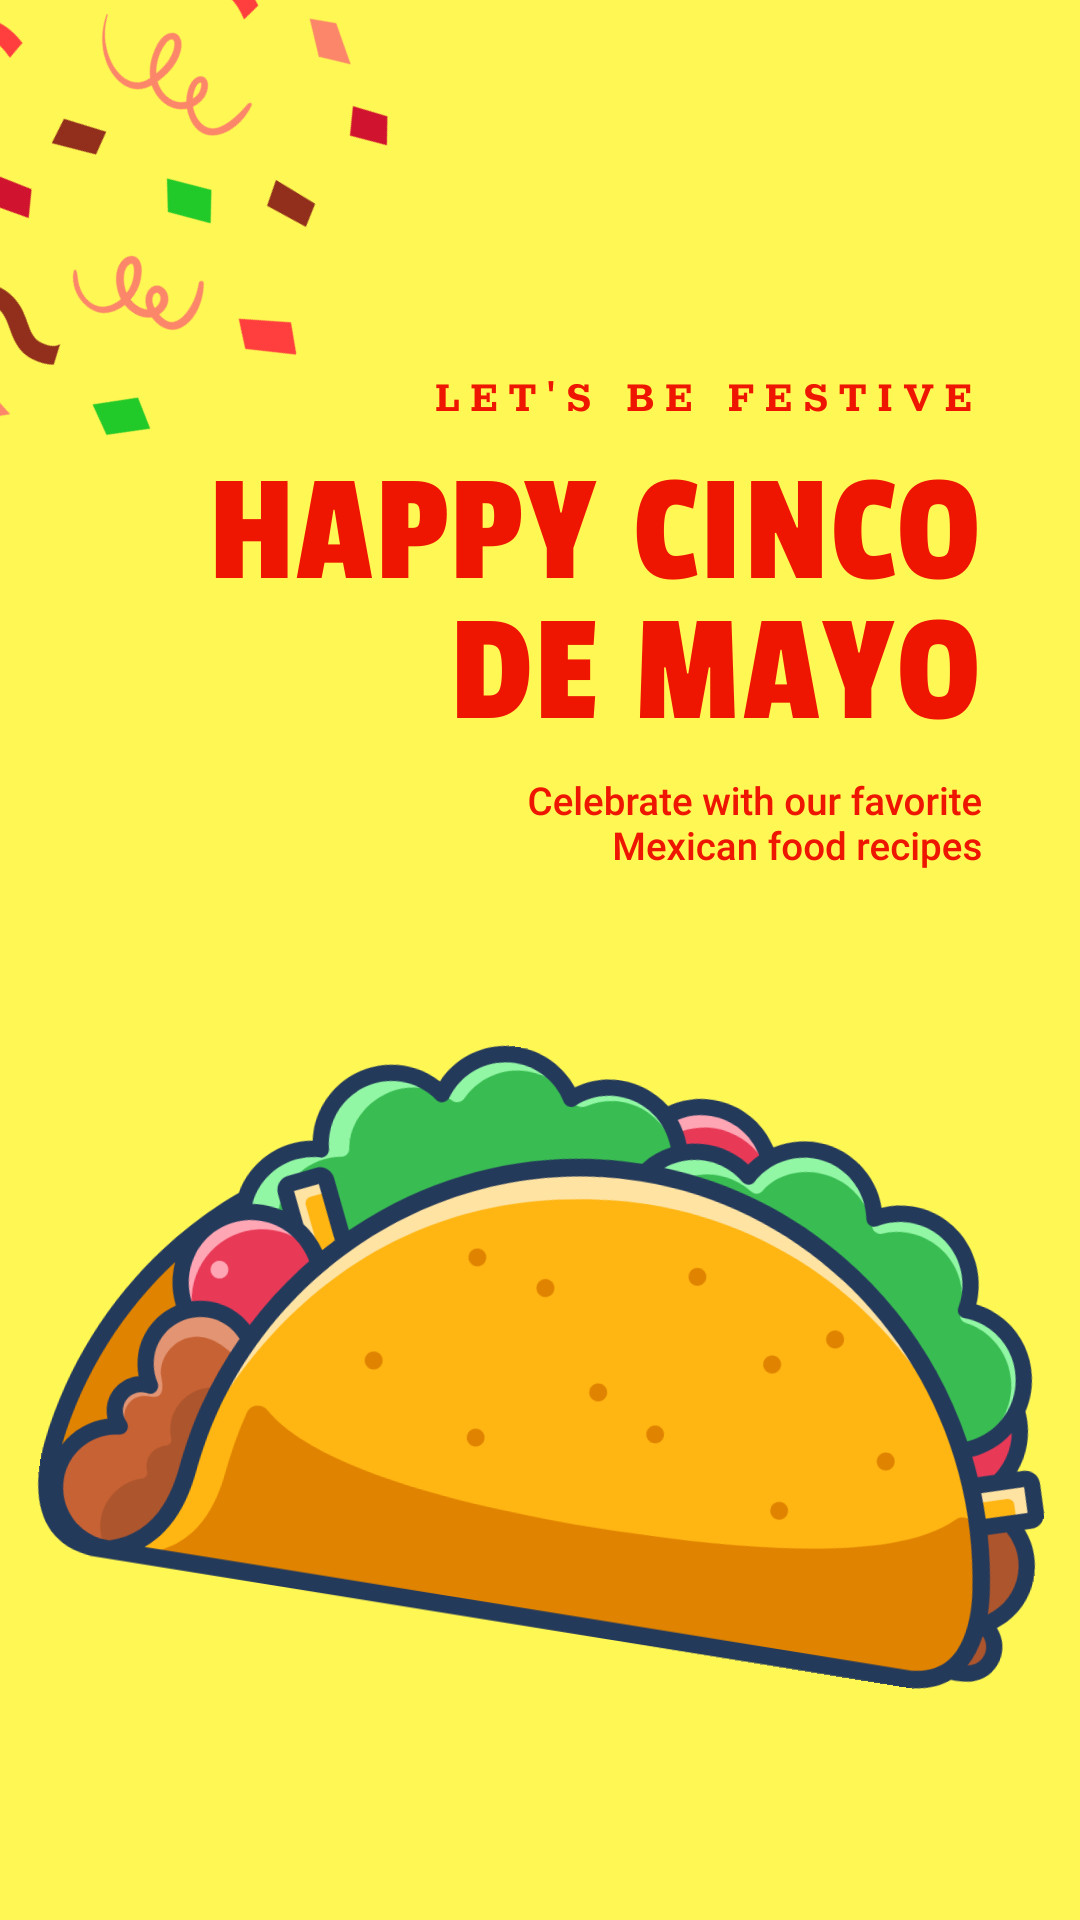 Happy Cinco de Mayo with Festive Recipes